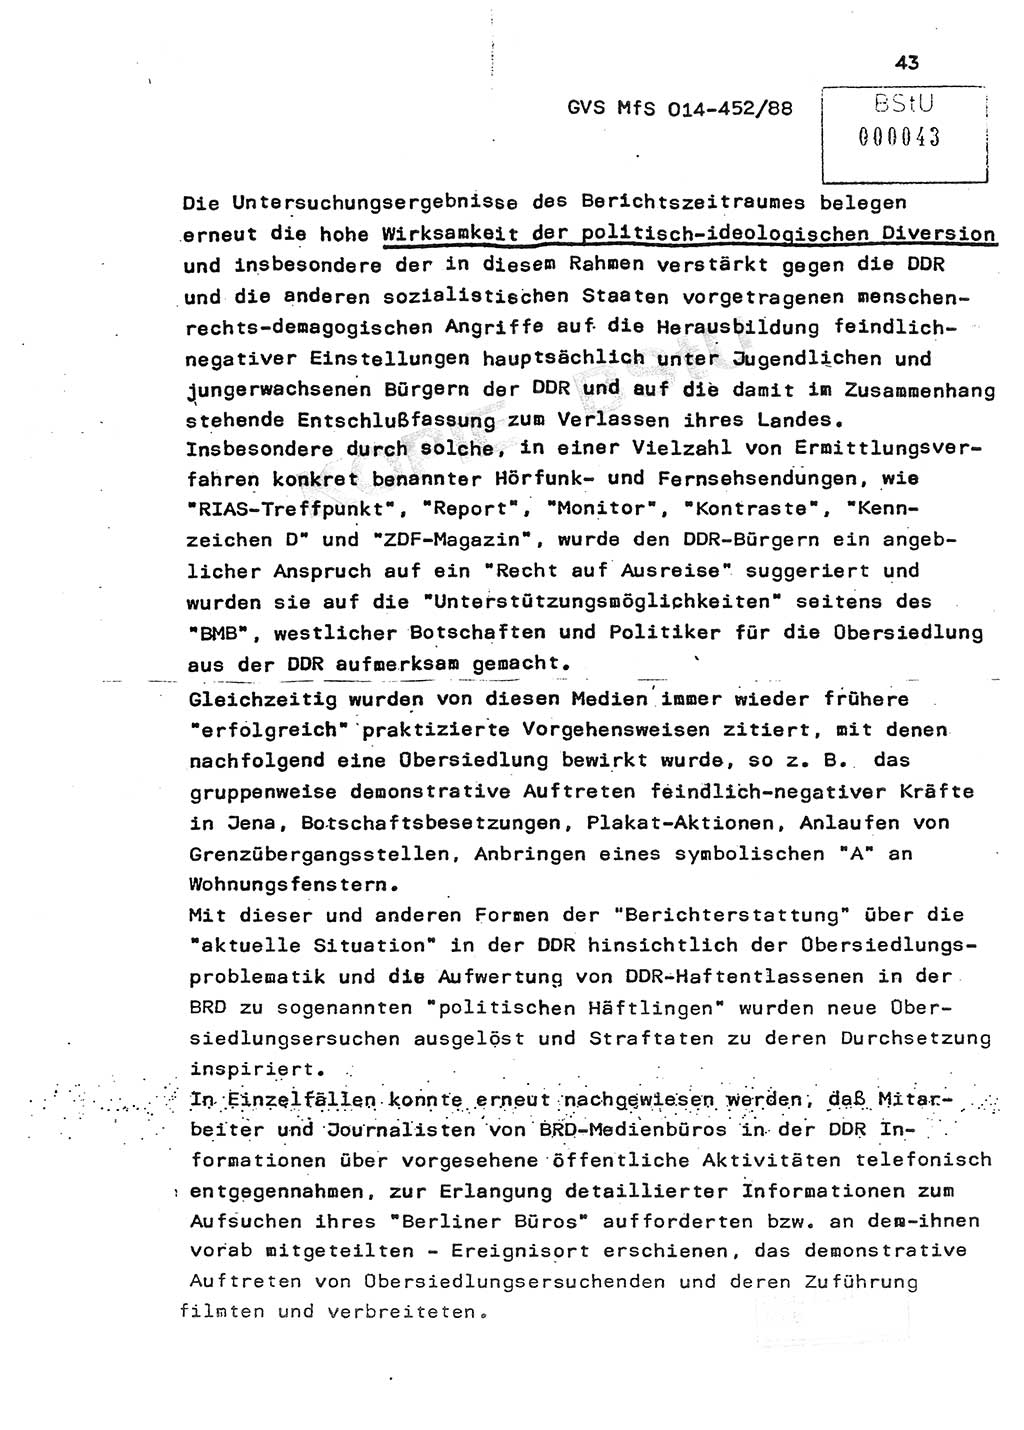 Jahresbericht der Hauptabteilung (HA) Ⅸ 1987, Einschätzung der Wirksamkeit der Untersuchungsarbeit im Jahre 1987, Ministerium für Staatssicherheit (MfS) der Deutschen Demokratischen Republik (DDR), Hauptabteilung Ⅸ, Geheime Verschlußsache (GVS) o014-452/88, Berlin 1988, Seite 43 (Einsch. MfS DDR HA Ⅸ GVS o014-452/88 1987, S. 43)